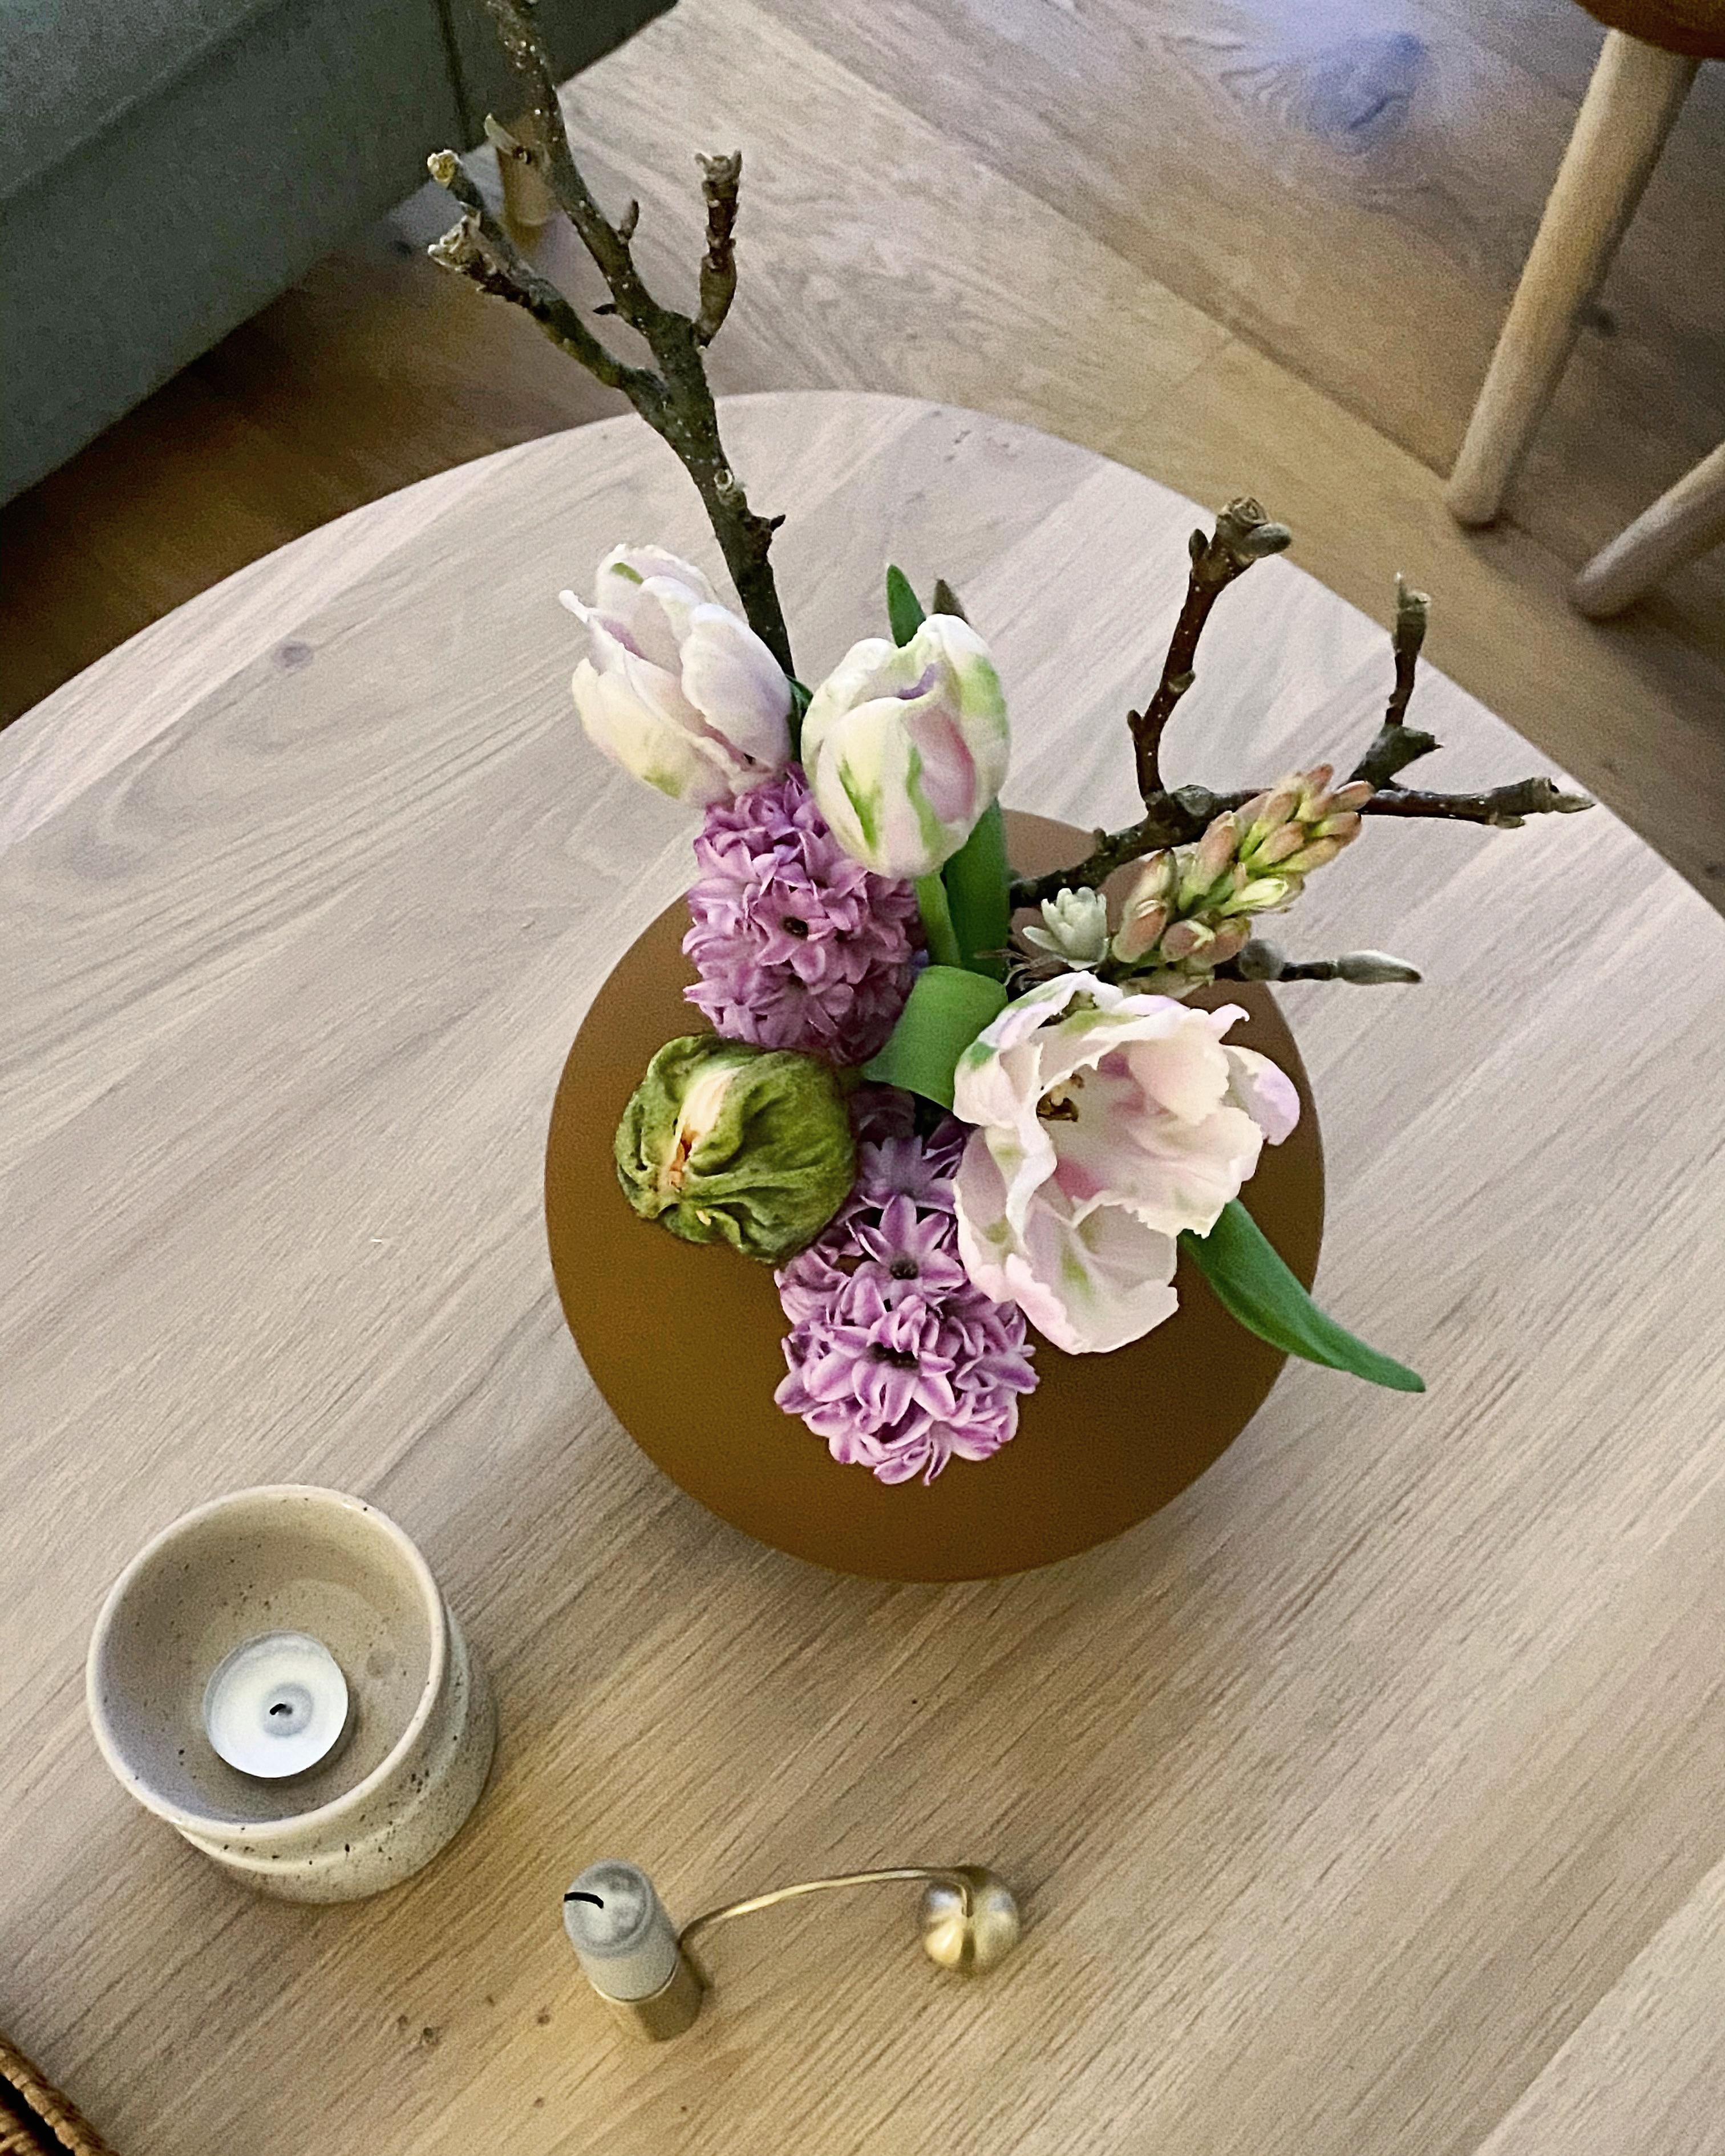 Flowers for you 🌸
#blumen#frühlingsblumen#interior#couchliebt#springflowers#frühling#couchtisch